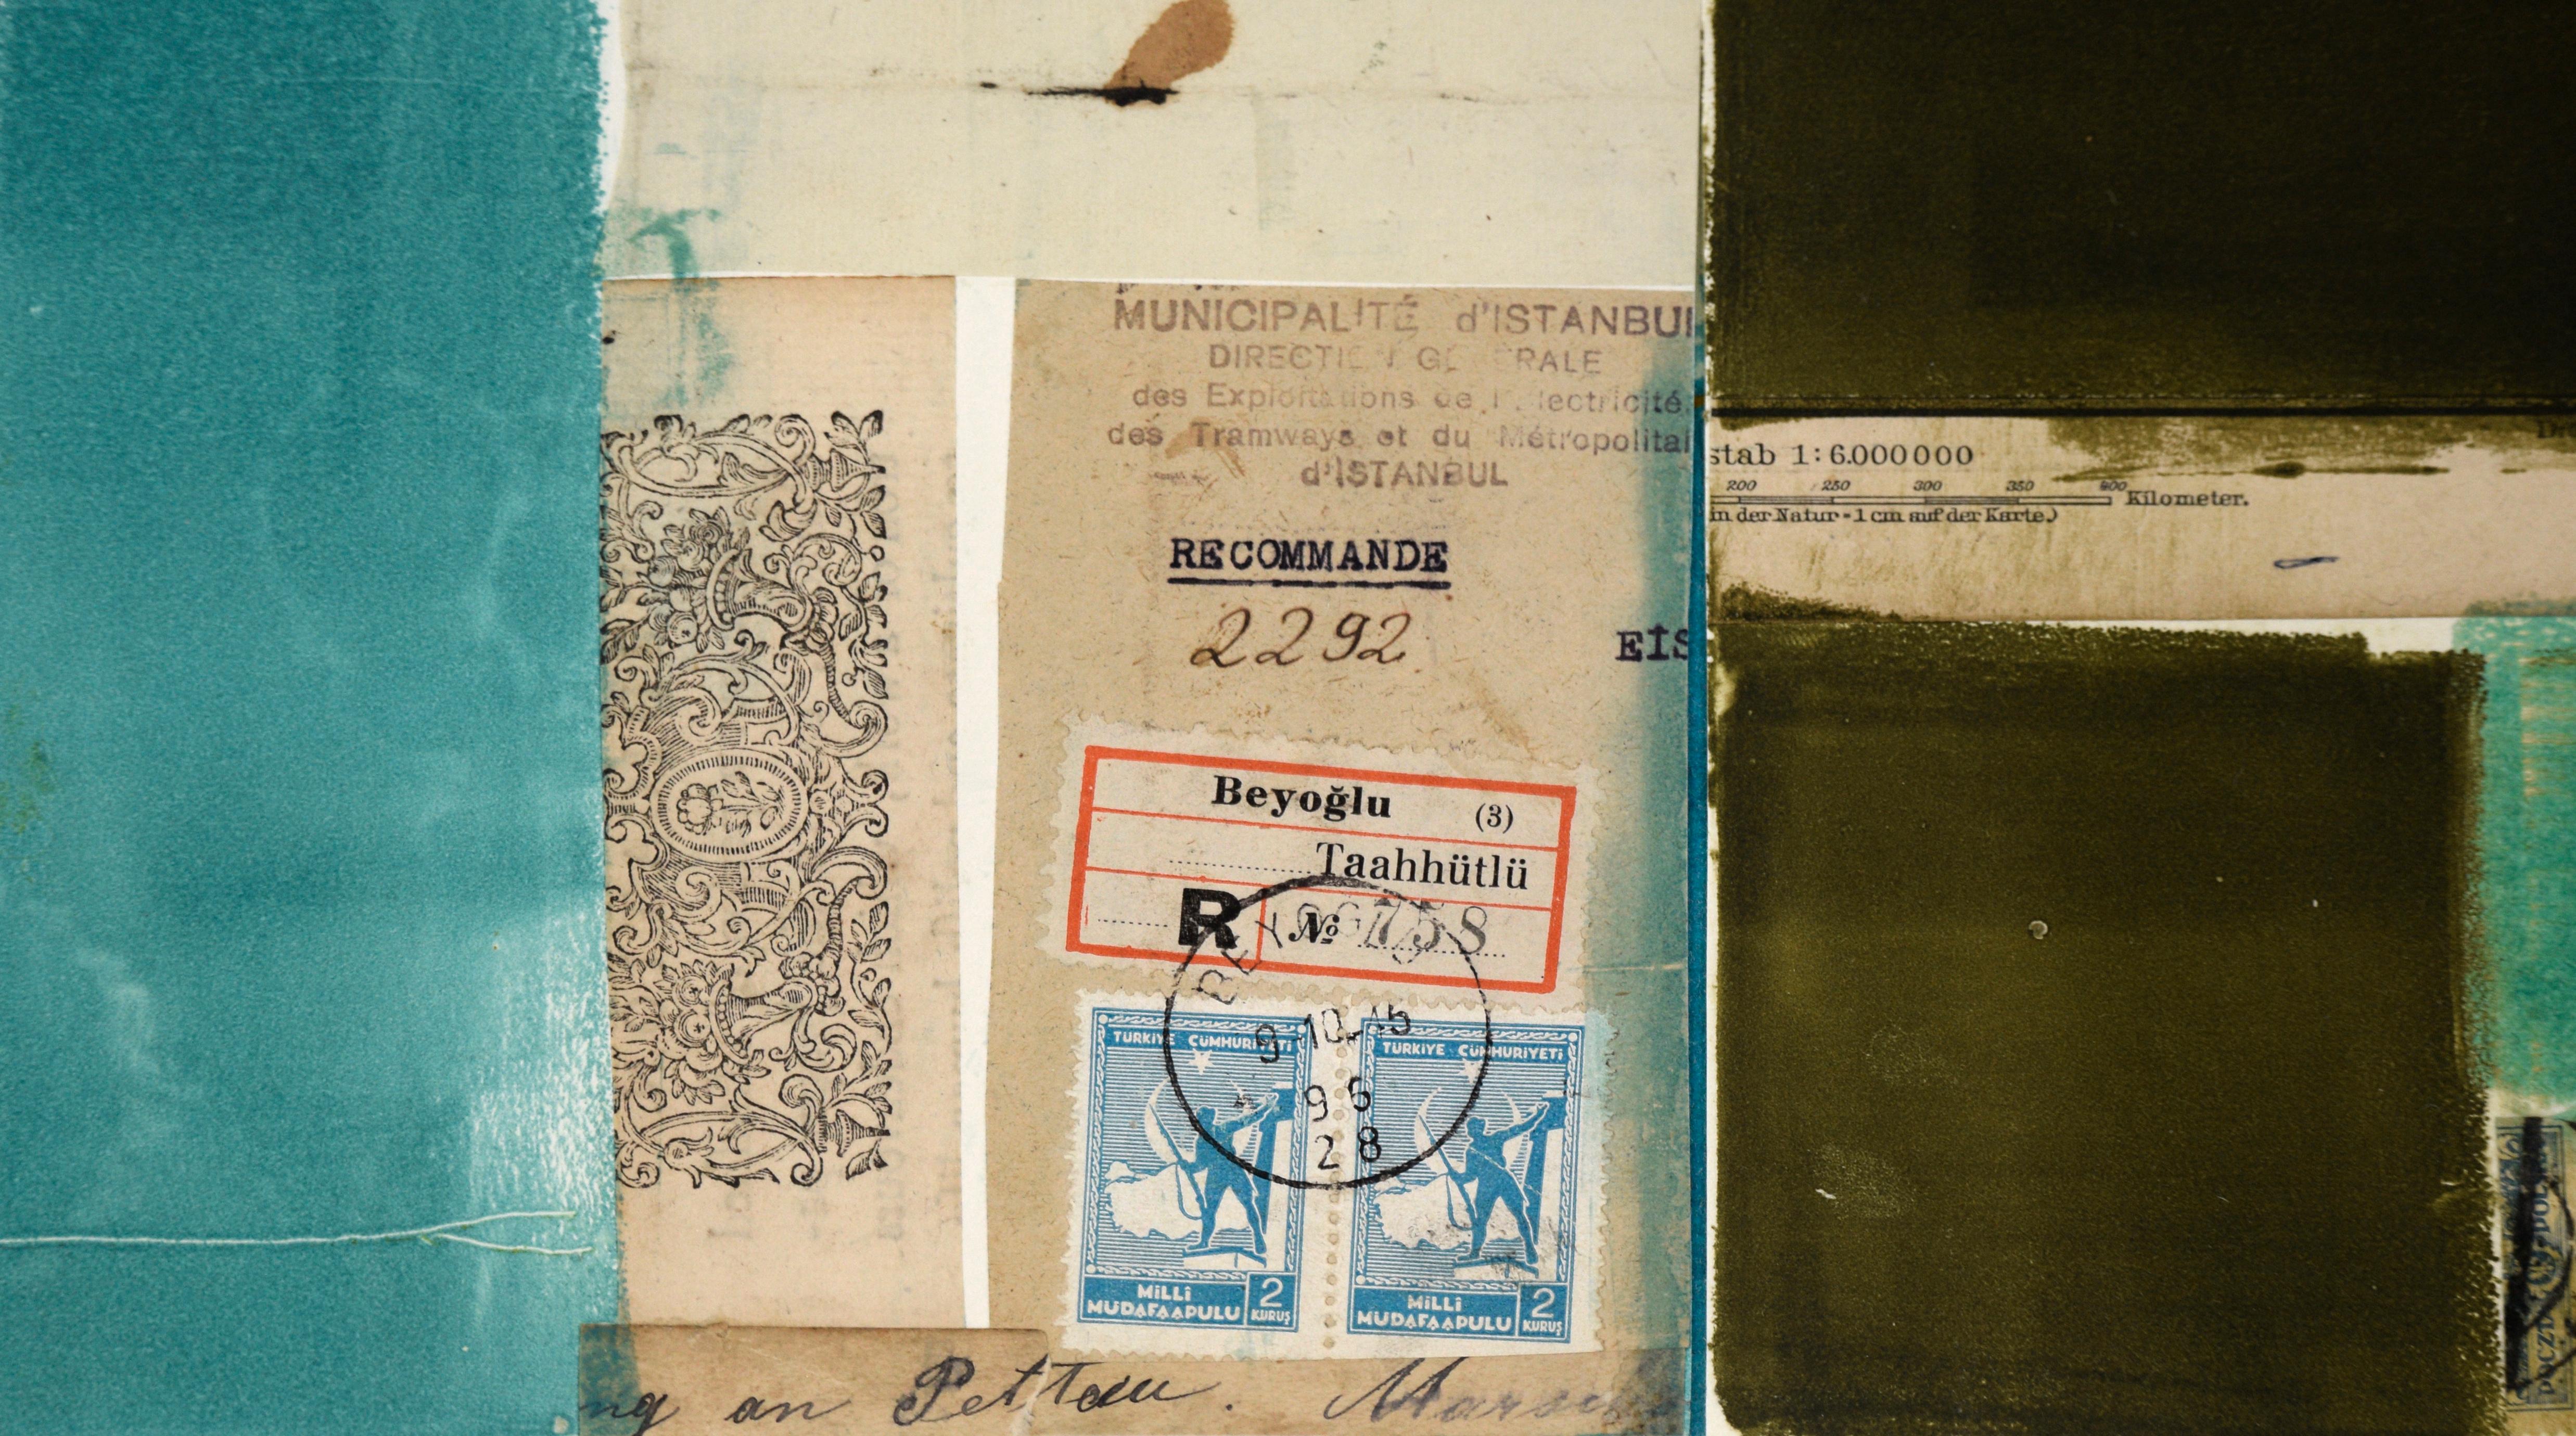 Zeitgenössische abstrakte Malerei und Collage aus gefundenen Objekten mit Briefmarken, Geld, verschiedenen Papiersorten und Aquarellfarben von Michael Pauker (Amerikaner, geb. 1957), 2010. Unsigniert, wurde aber mit einer Sammlung von Werken des